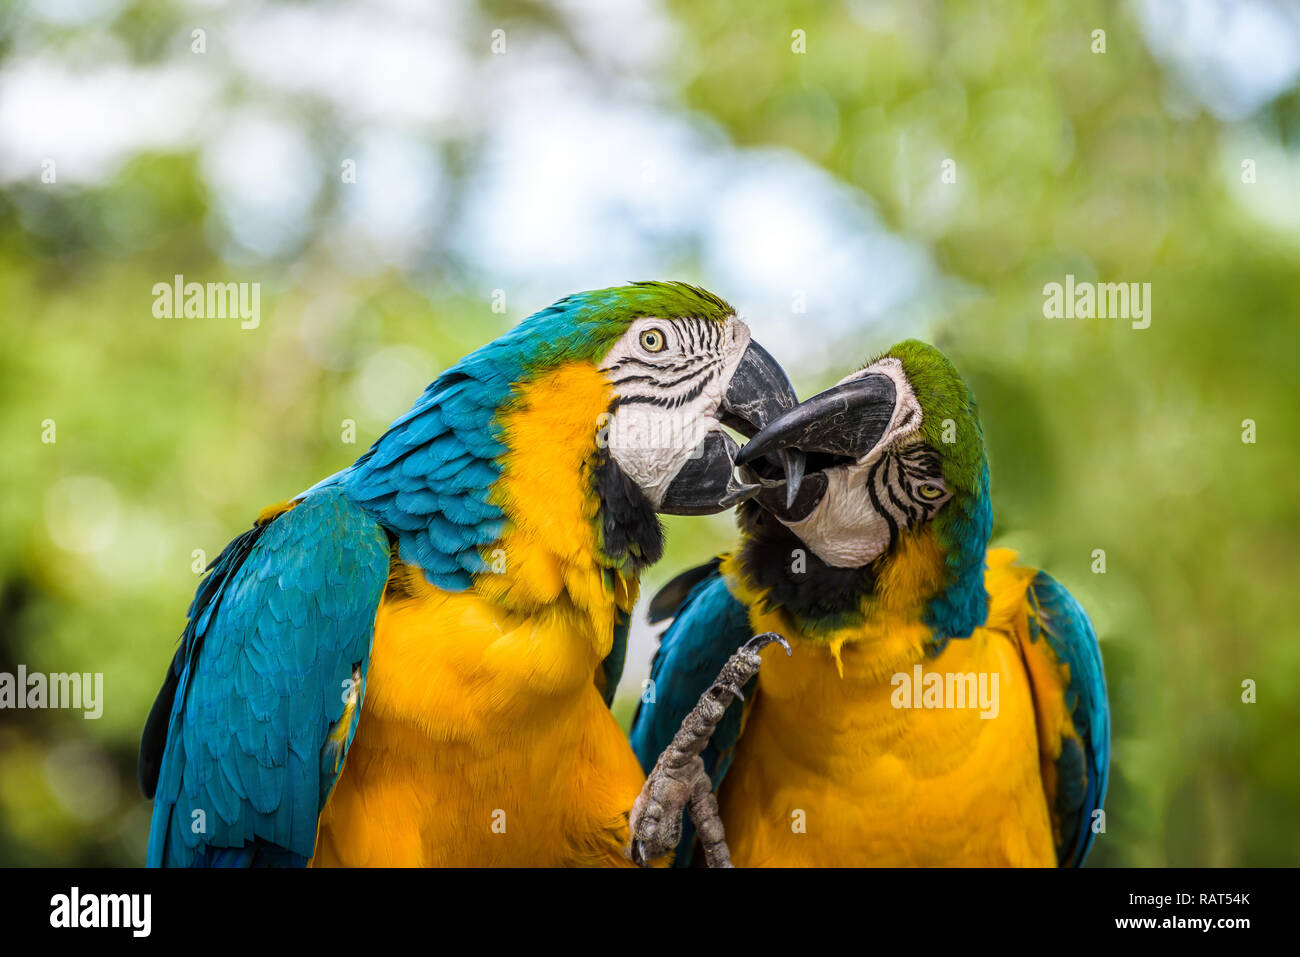 Portrait d'un couple d'Aras bleu et jaune de toucher et jouer avec avec leur bec puissant, comme s'ils s'embrassaient. Banque D'Images